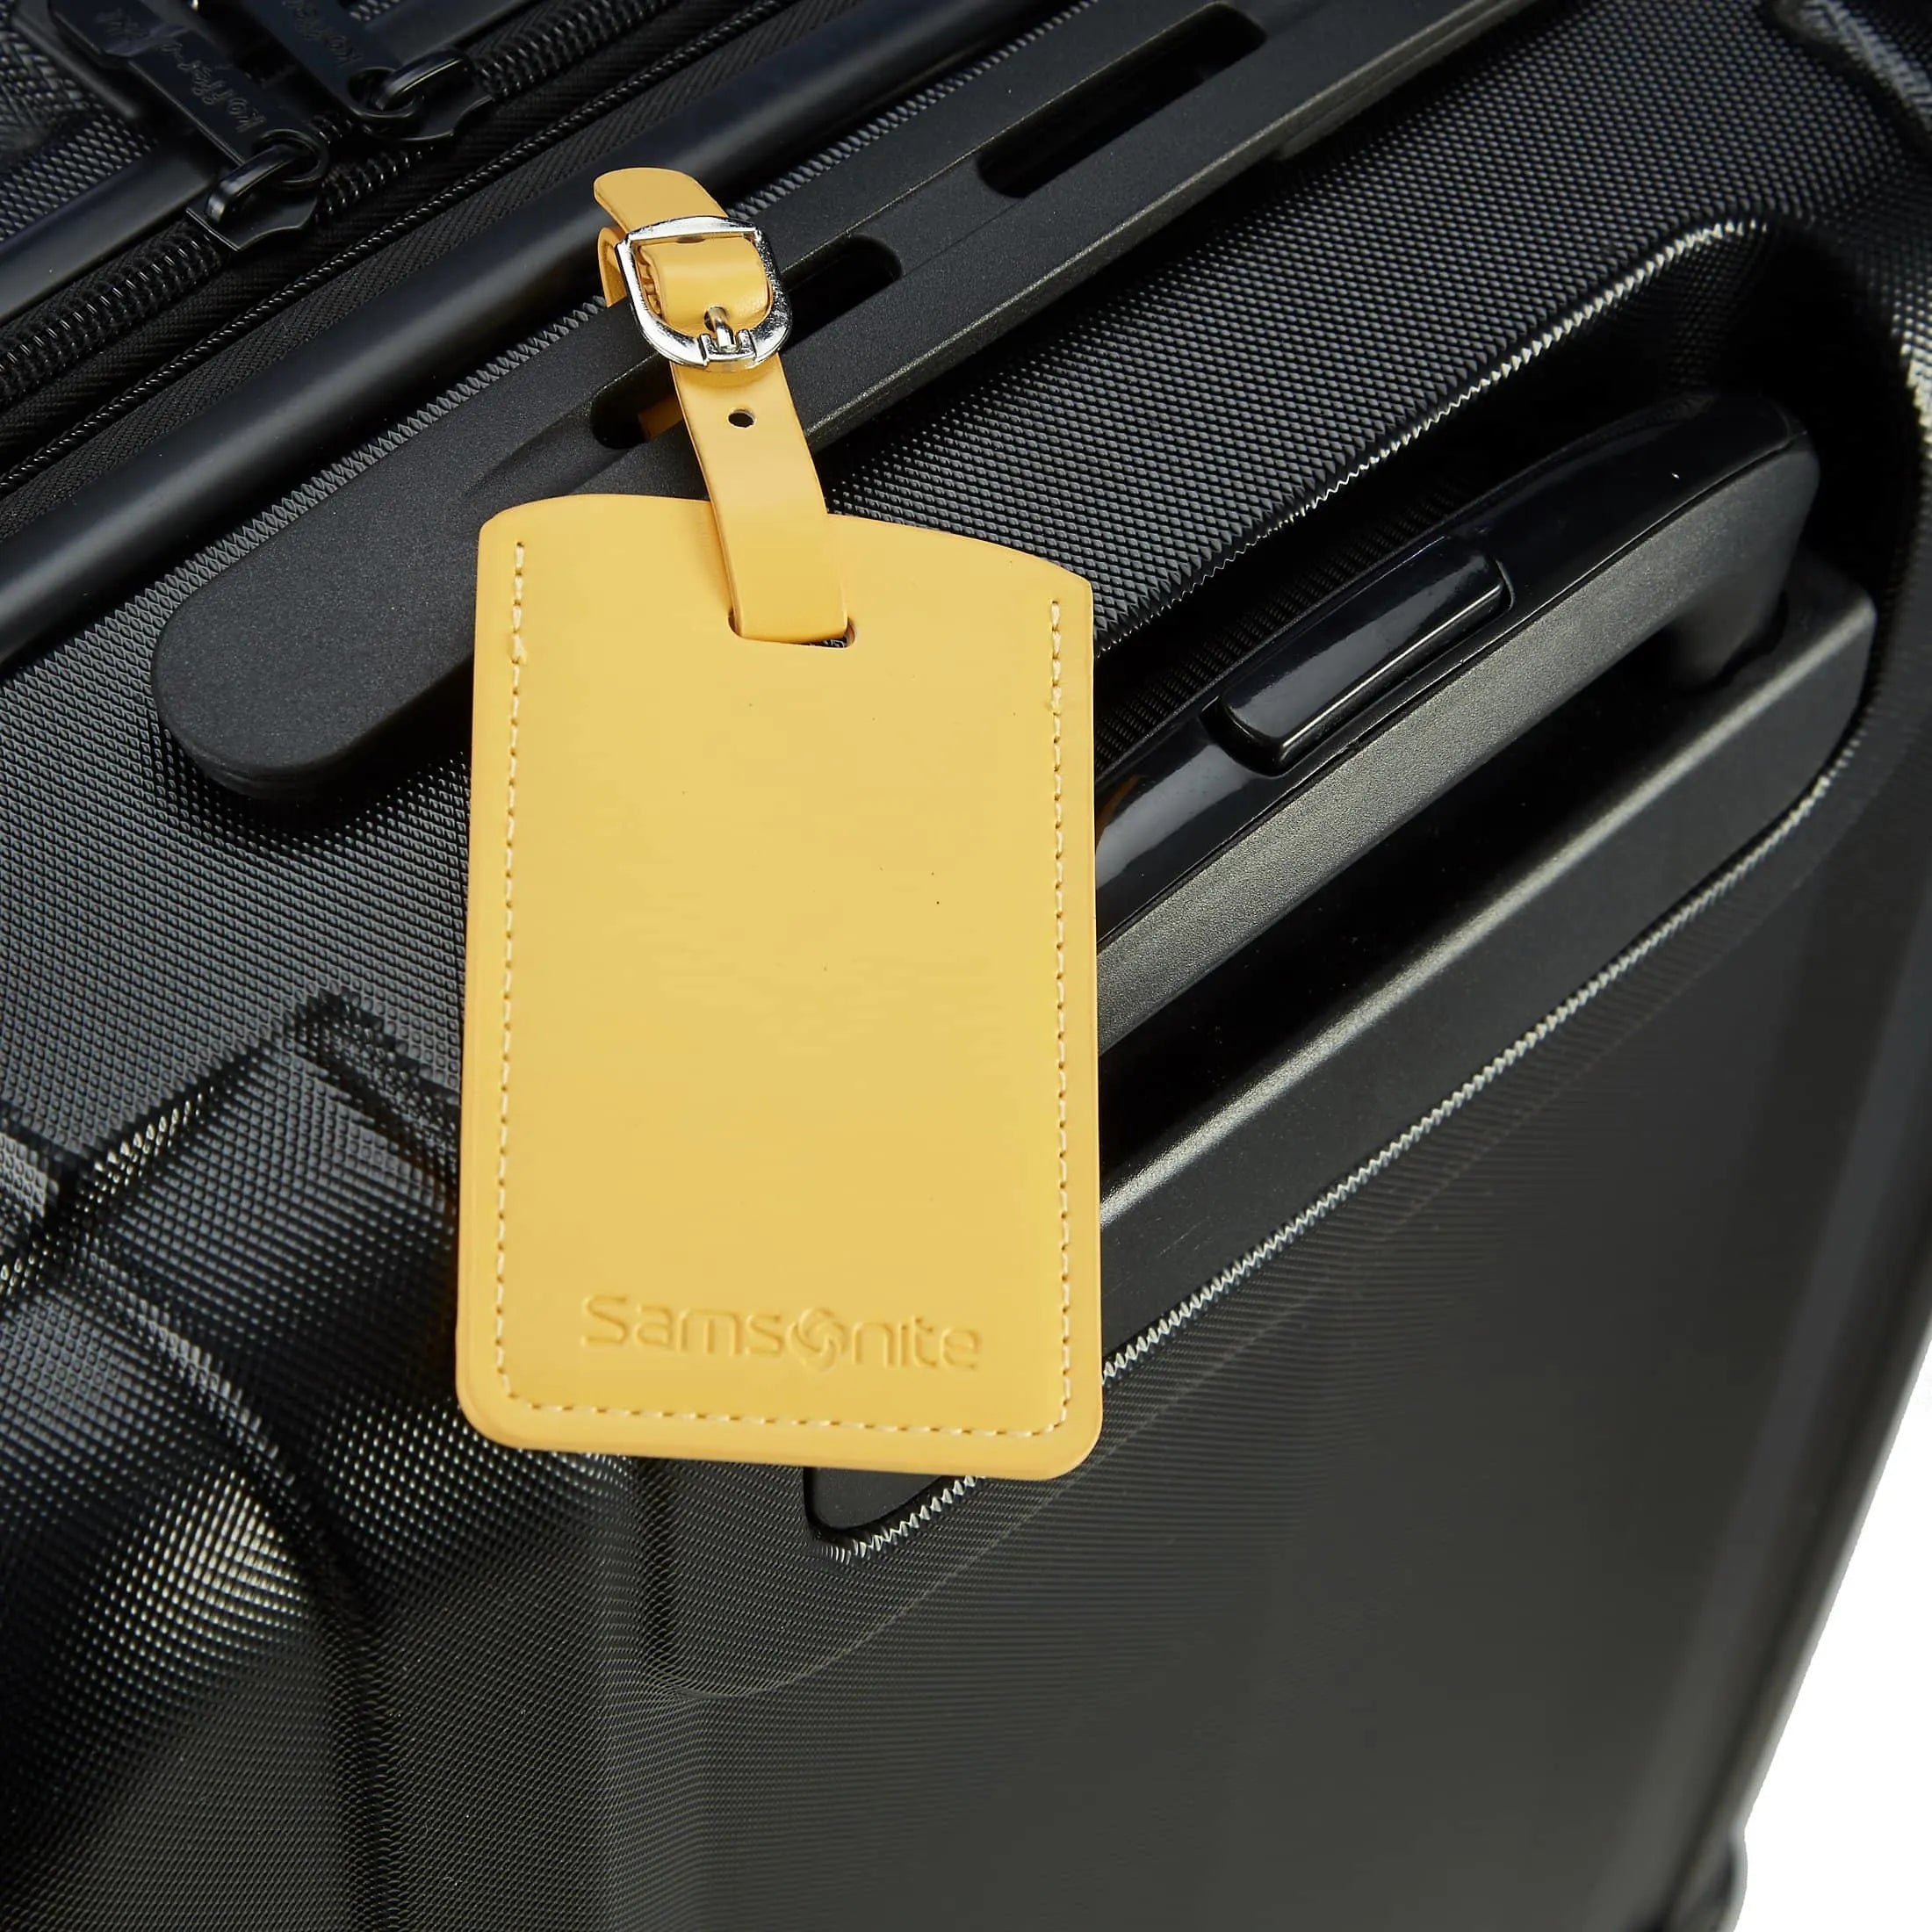 Samsonite Travel Accessories ensemble d'étiquettes à bagages - rose pâle